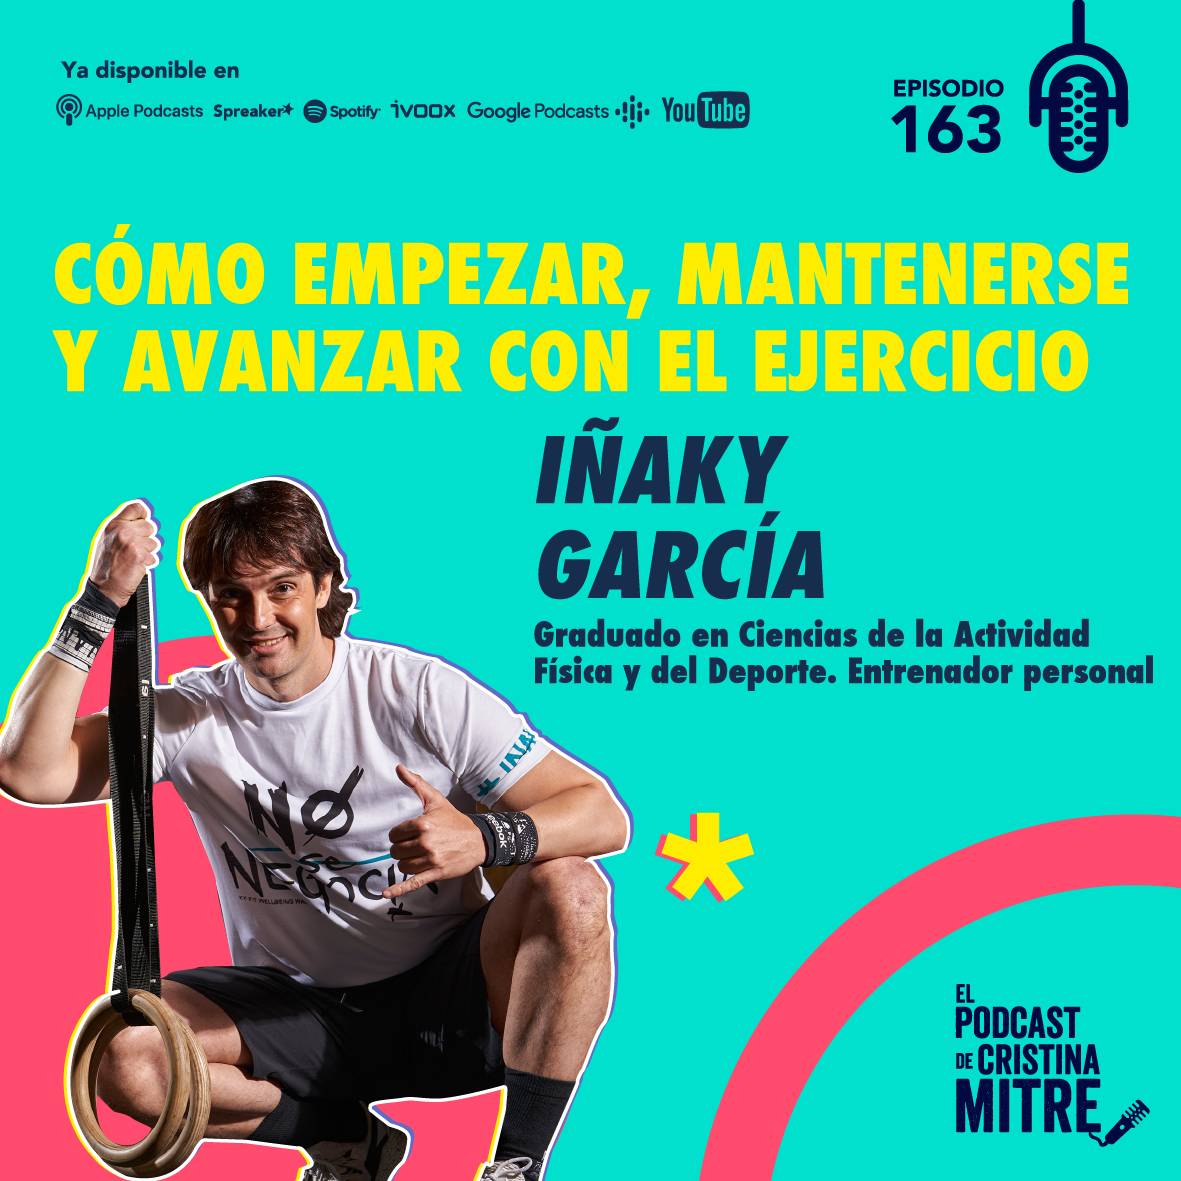 Iñaky García El podcast de Cristina Mitre Episodio 163